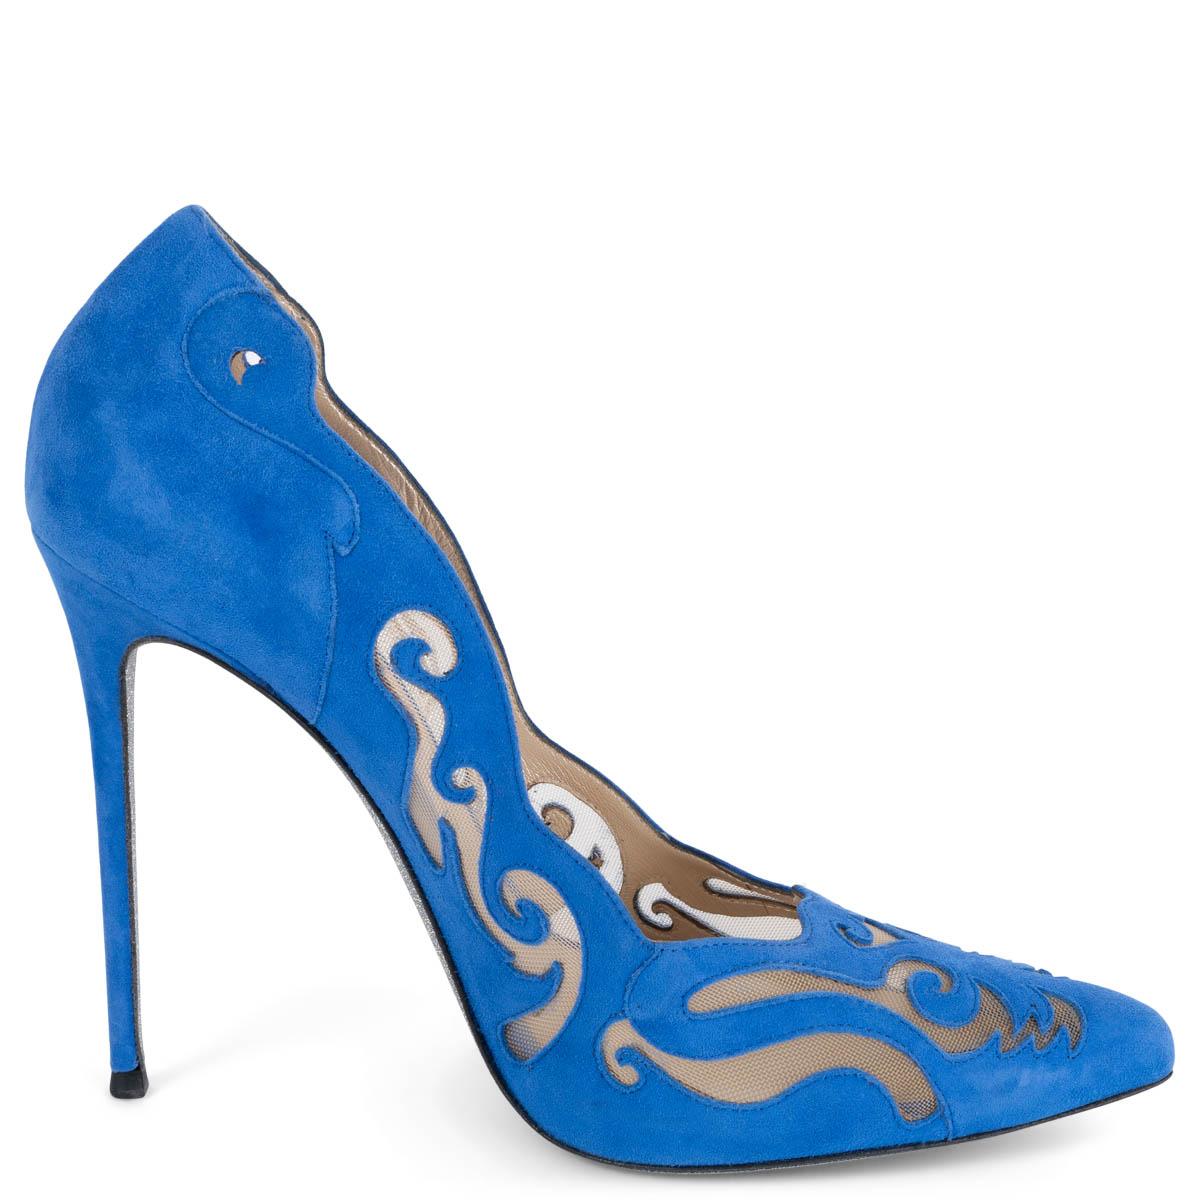 Bleu RENE CAOVILLA Chaussures à talons en daim bleu cobalt ILLUSION LASER-CUT 38,5 en vente